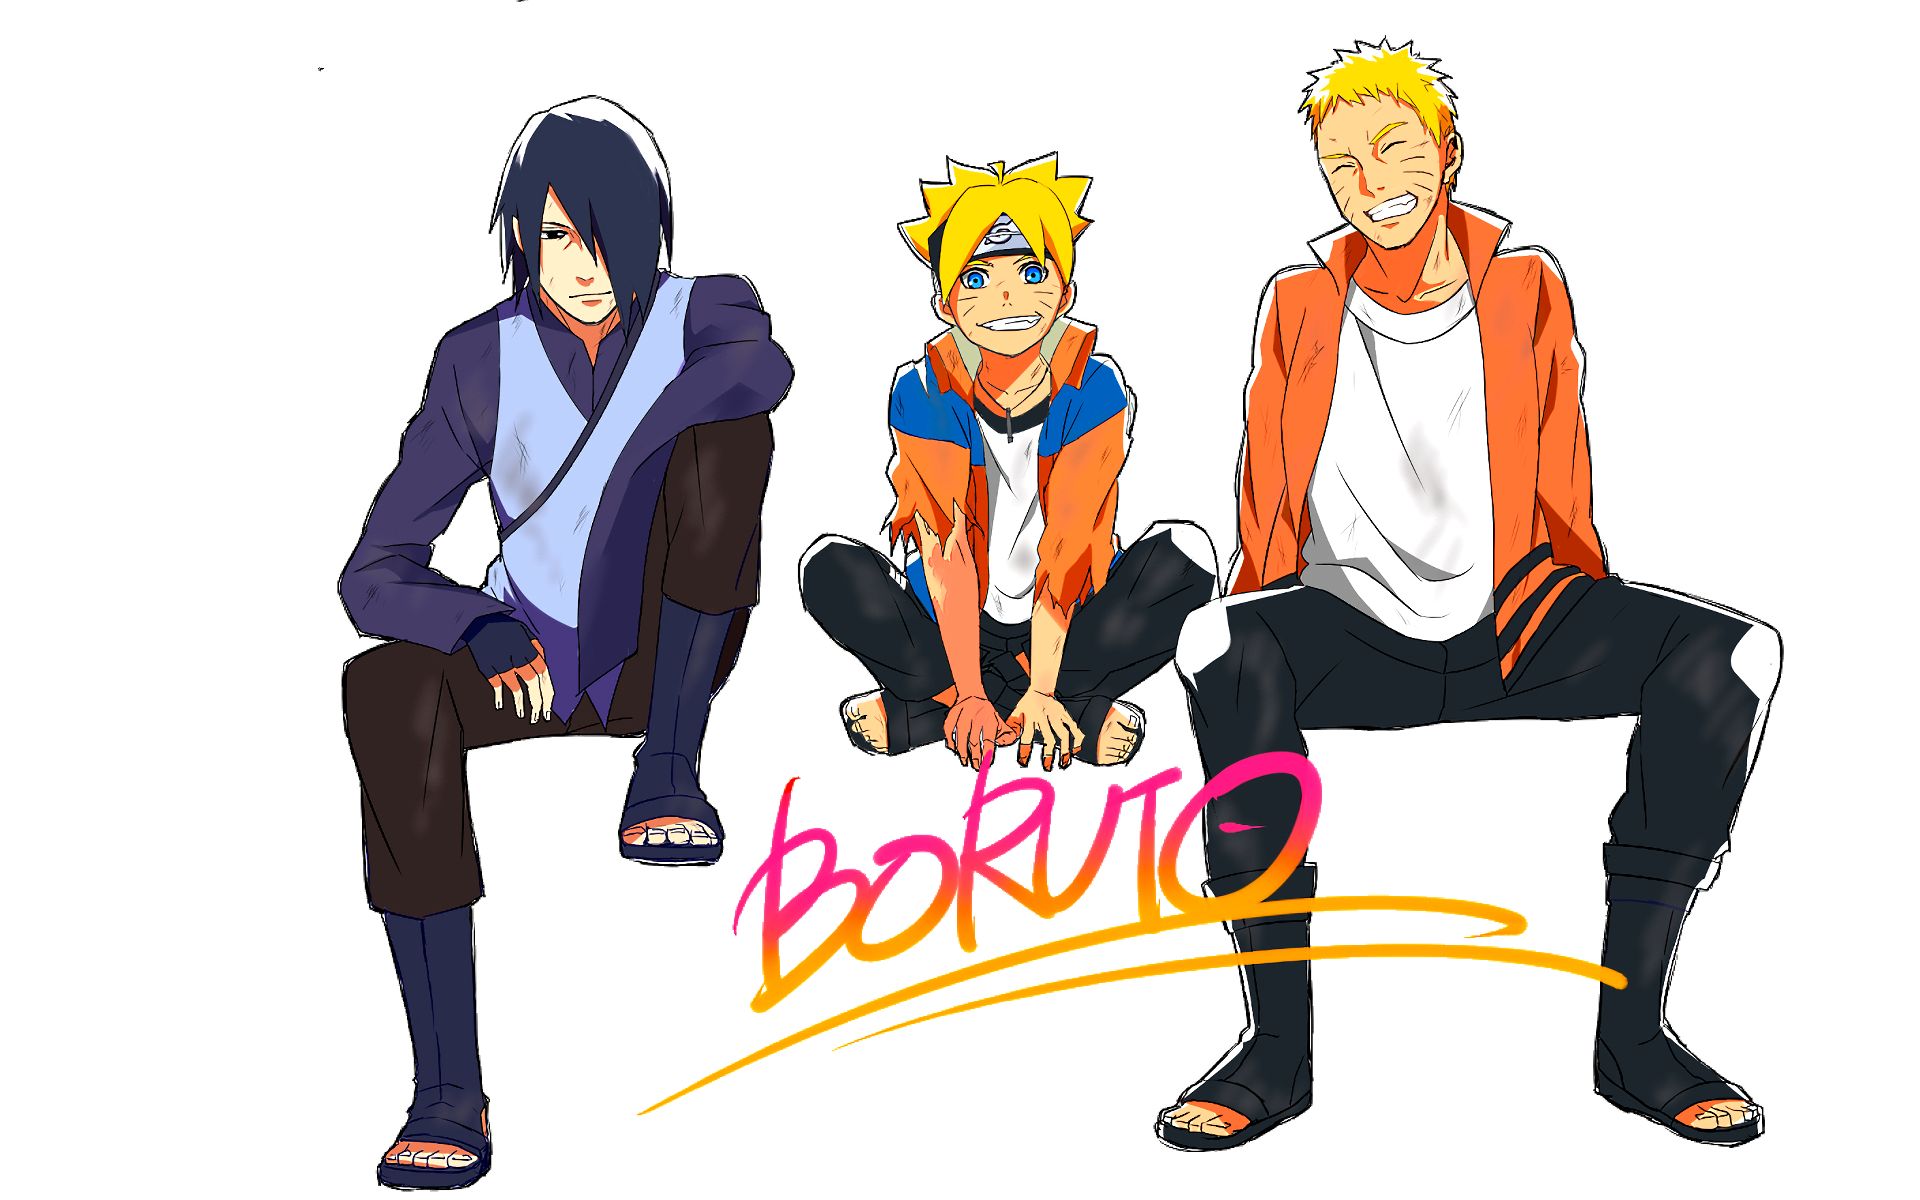 HD desktop wallpaper: Anime, Naruto, Sasuke Uchiha, Naruto Uzumaki, Boruto:  Naruto The Movie, Boruto Uzumaki download free picture #368067